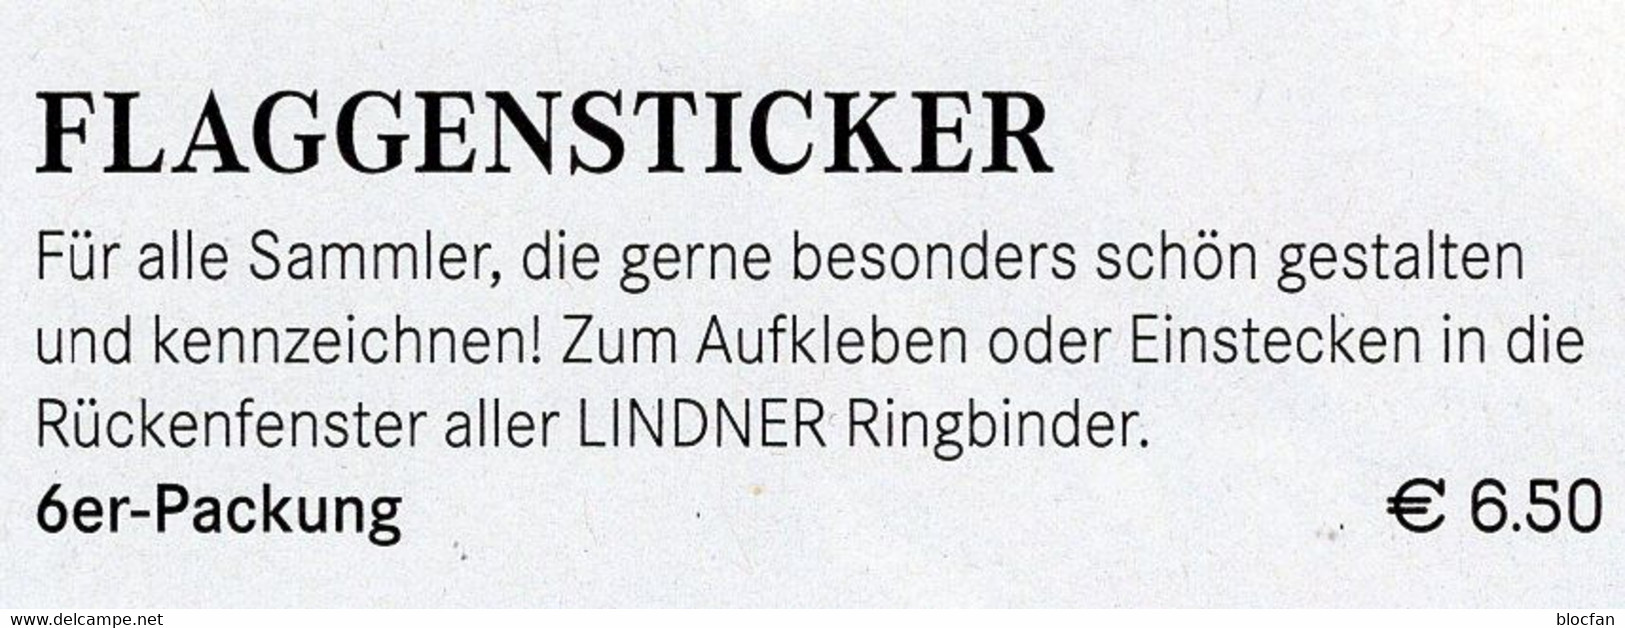 6 Flaggen-Sticker Schweiz In Farbe Pack 7€ Zur Kennzeichnung Von Alben Und Sammlung Firma LINDNER #646 Flag Of Helvetia - Albums, Binders & Pages